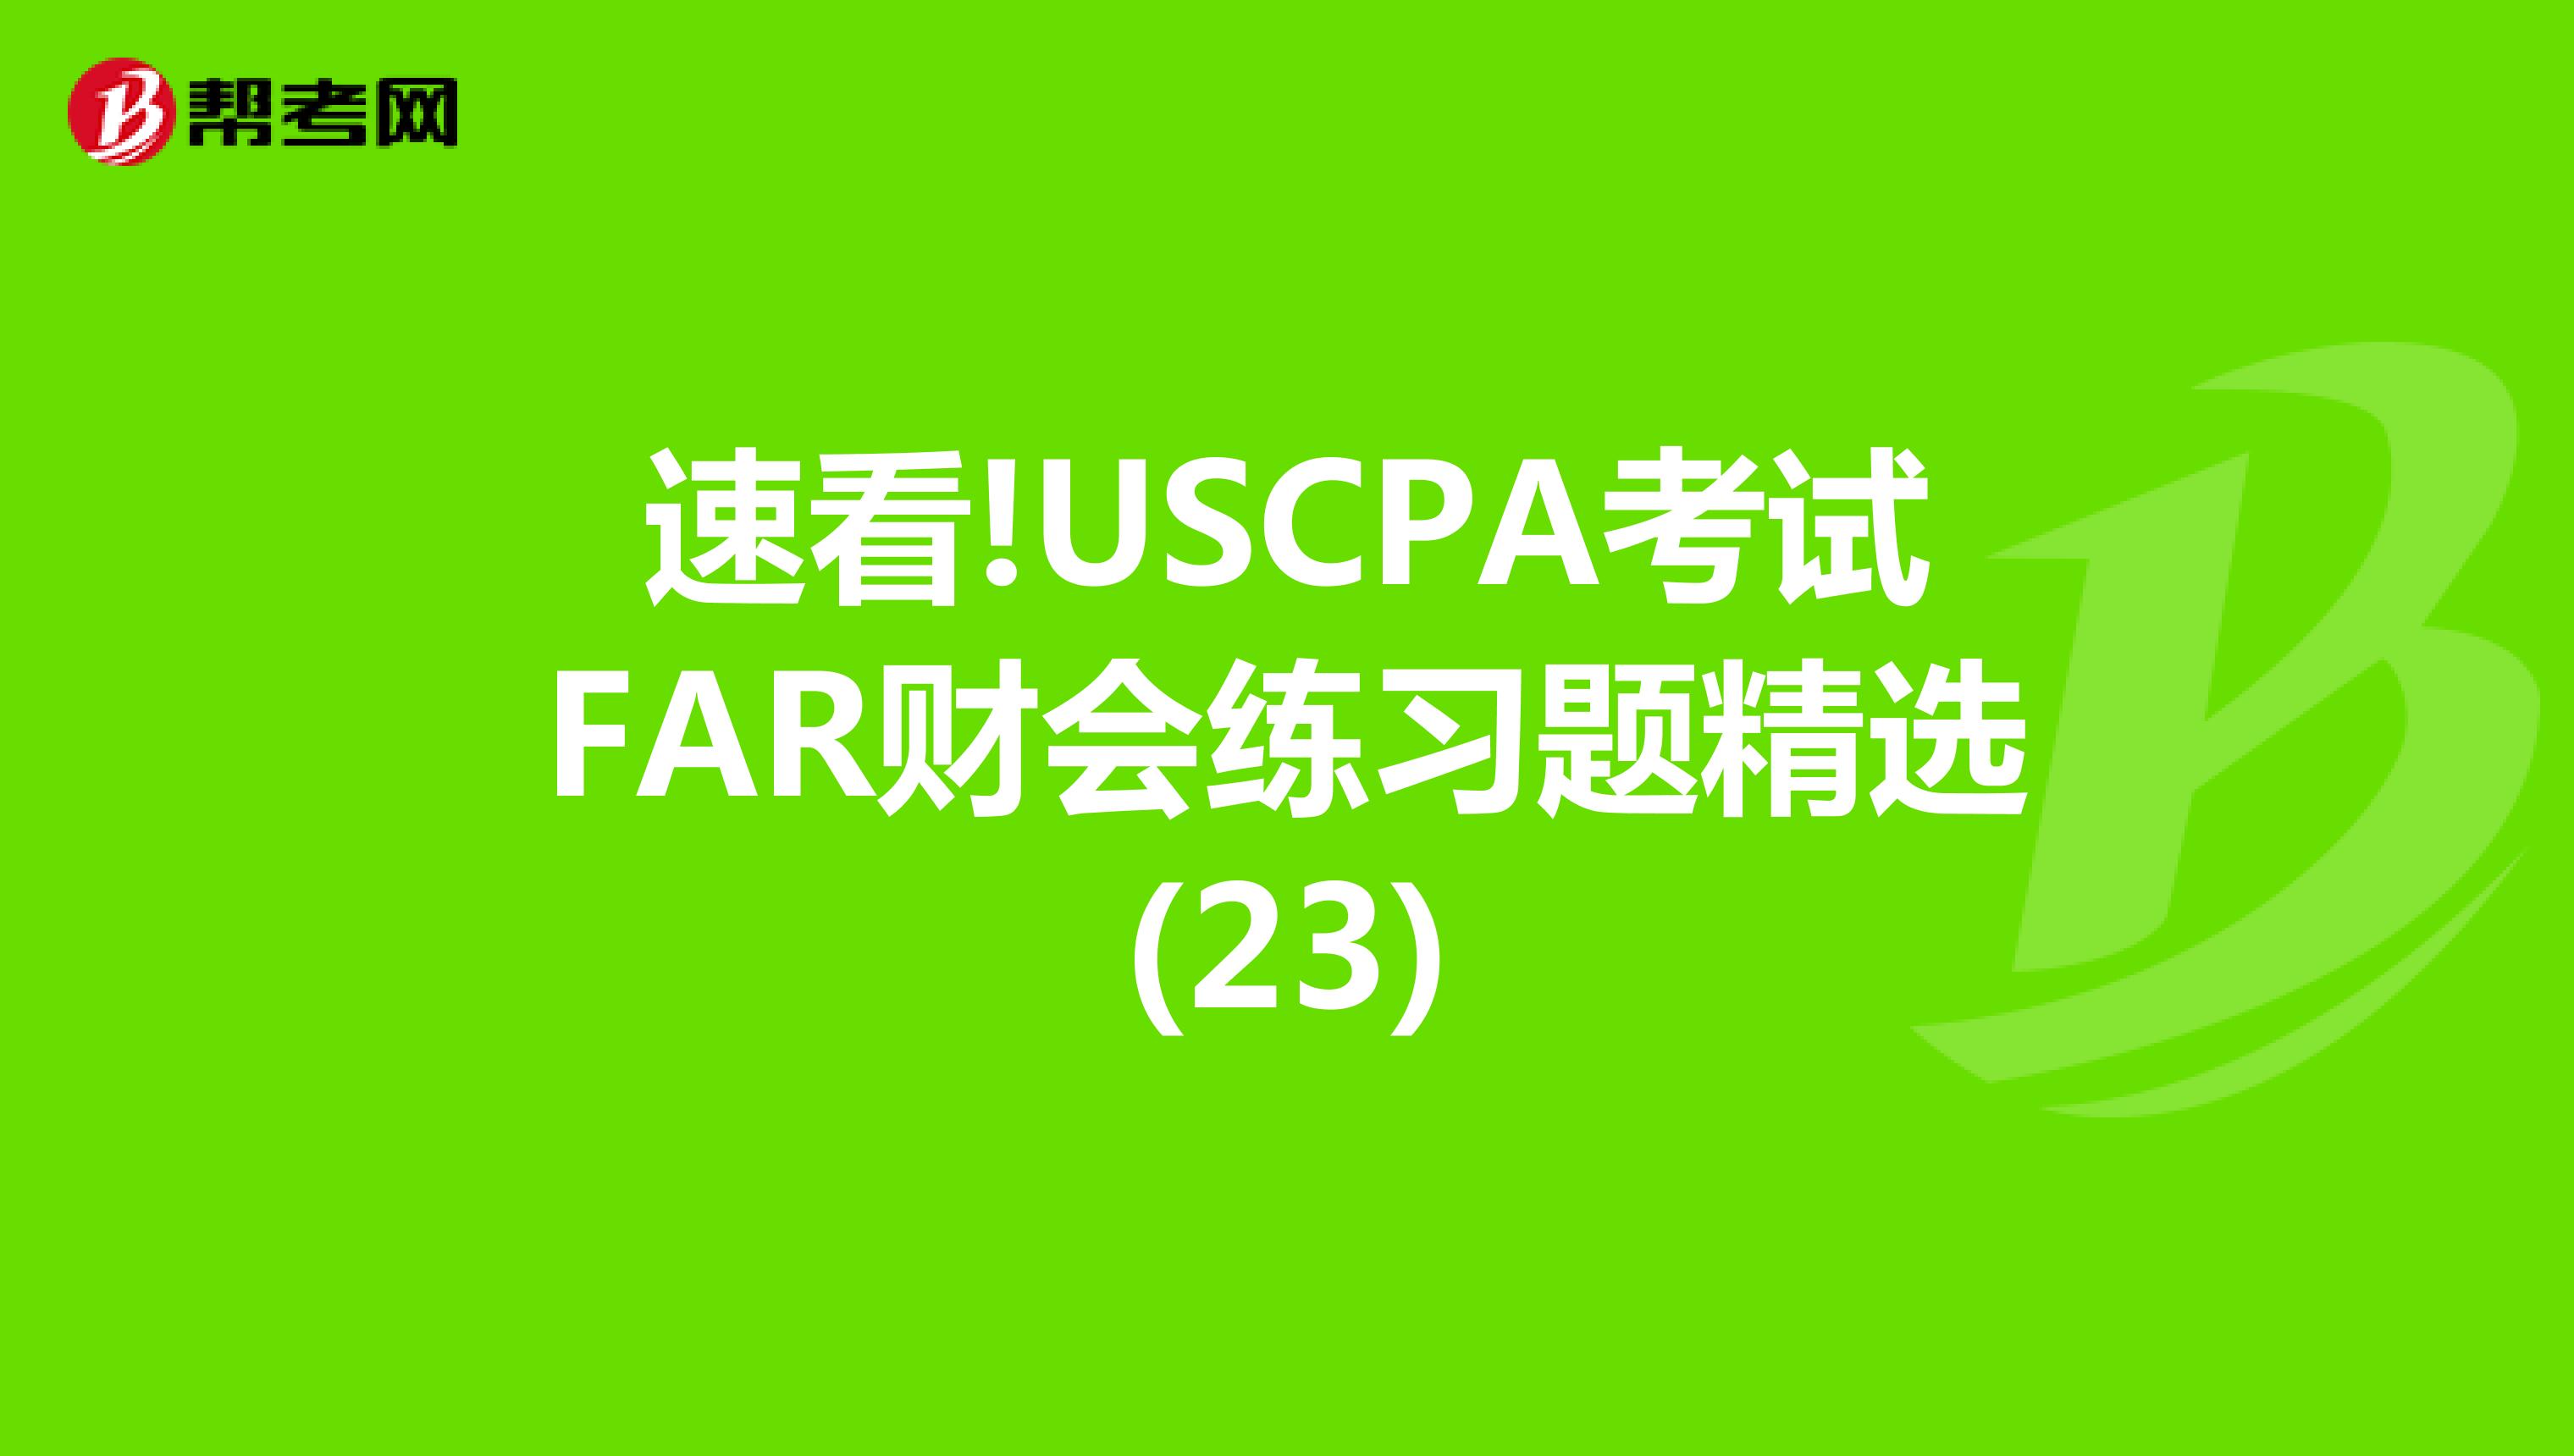 速看!USCPA考试FAR财会练习题精选(23)